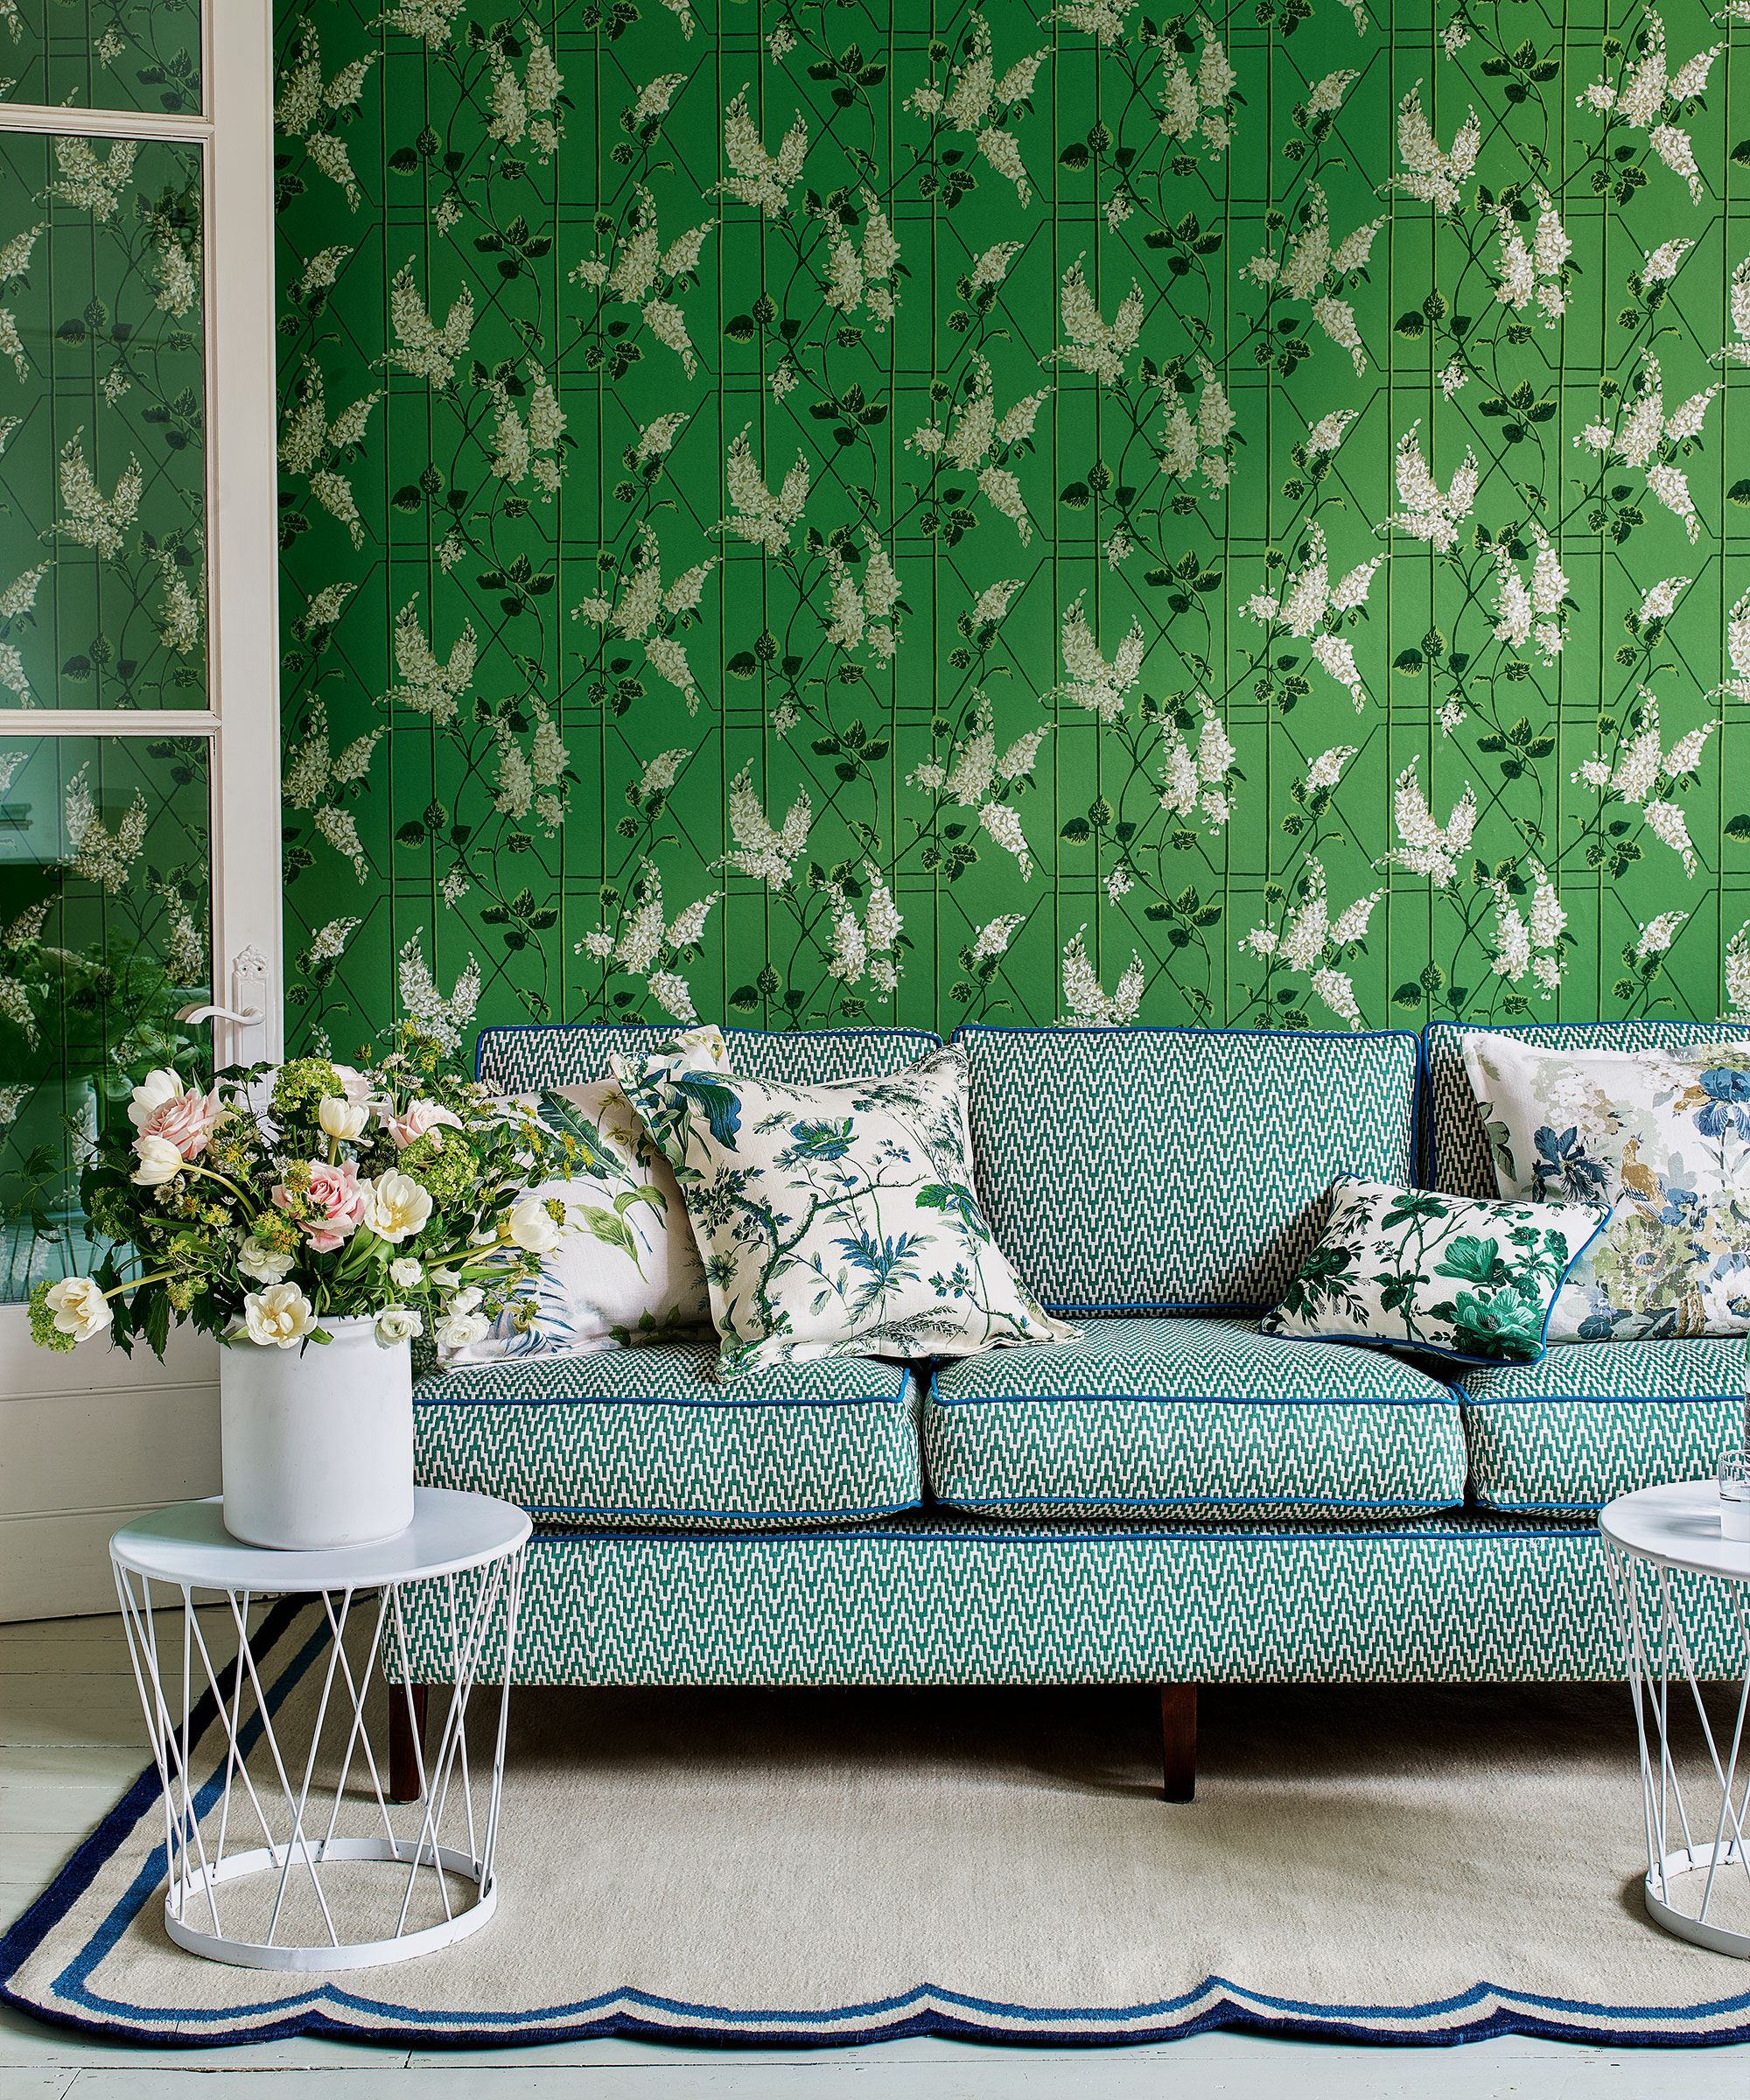 Green living room ideas